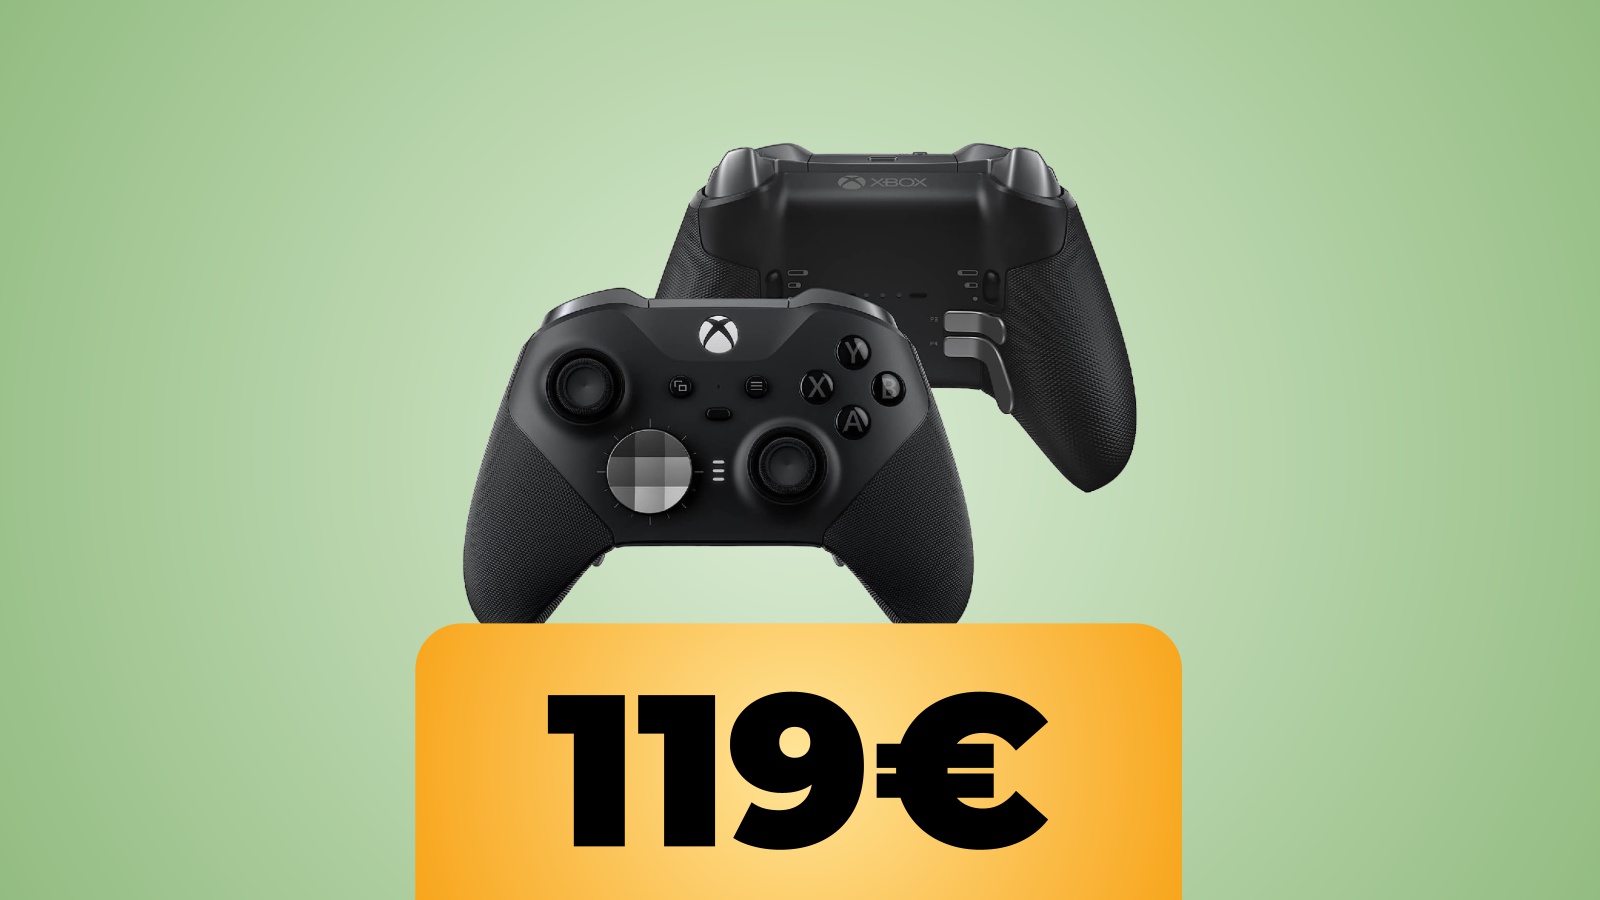 Controller Xbox Elite Series 2 con accessori inclusi al prezzo minimo storico su Amazon